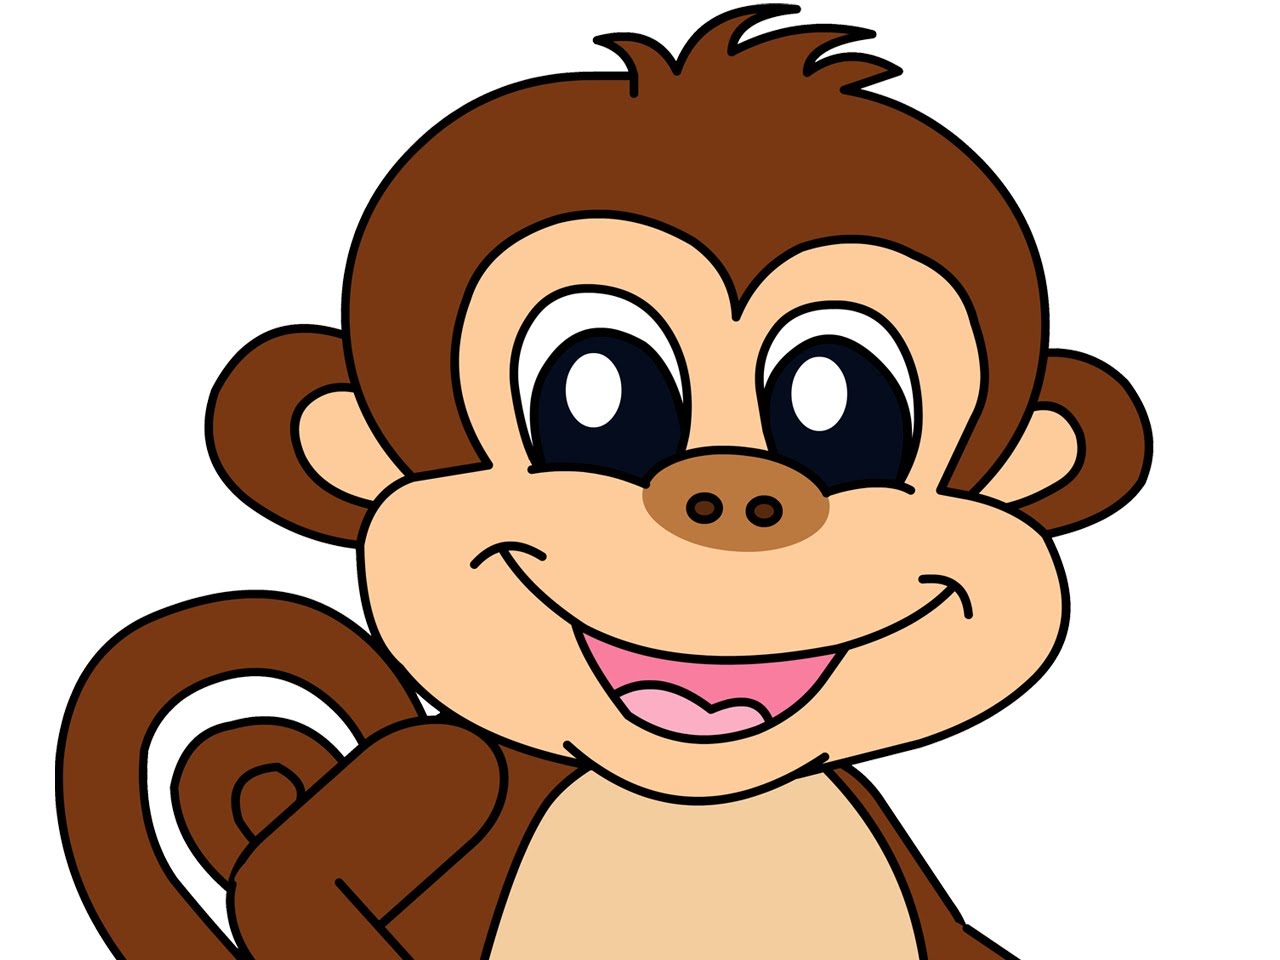 monkey default picture, monkey default wallpaper